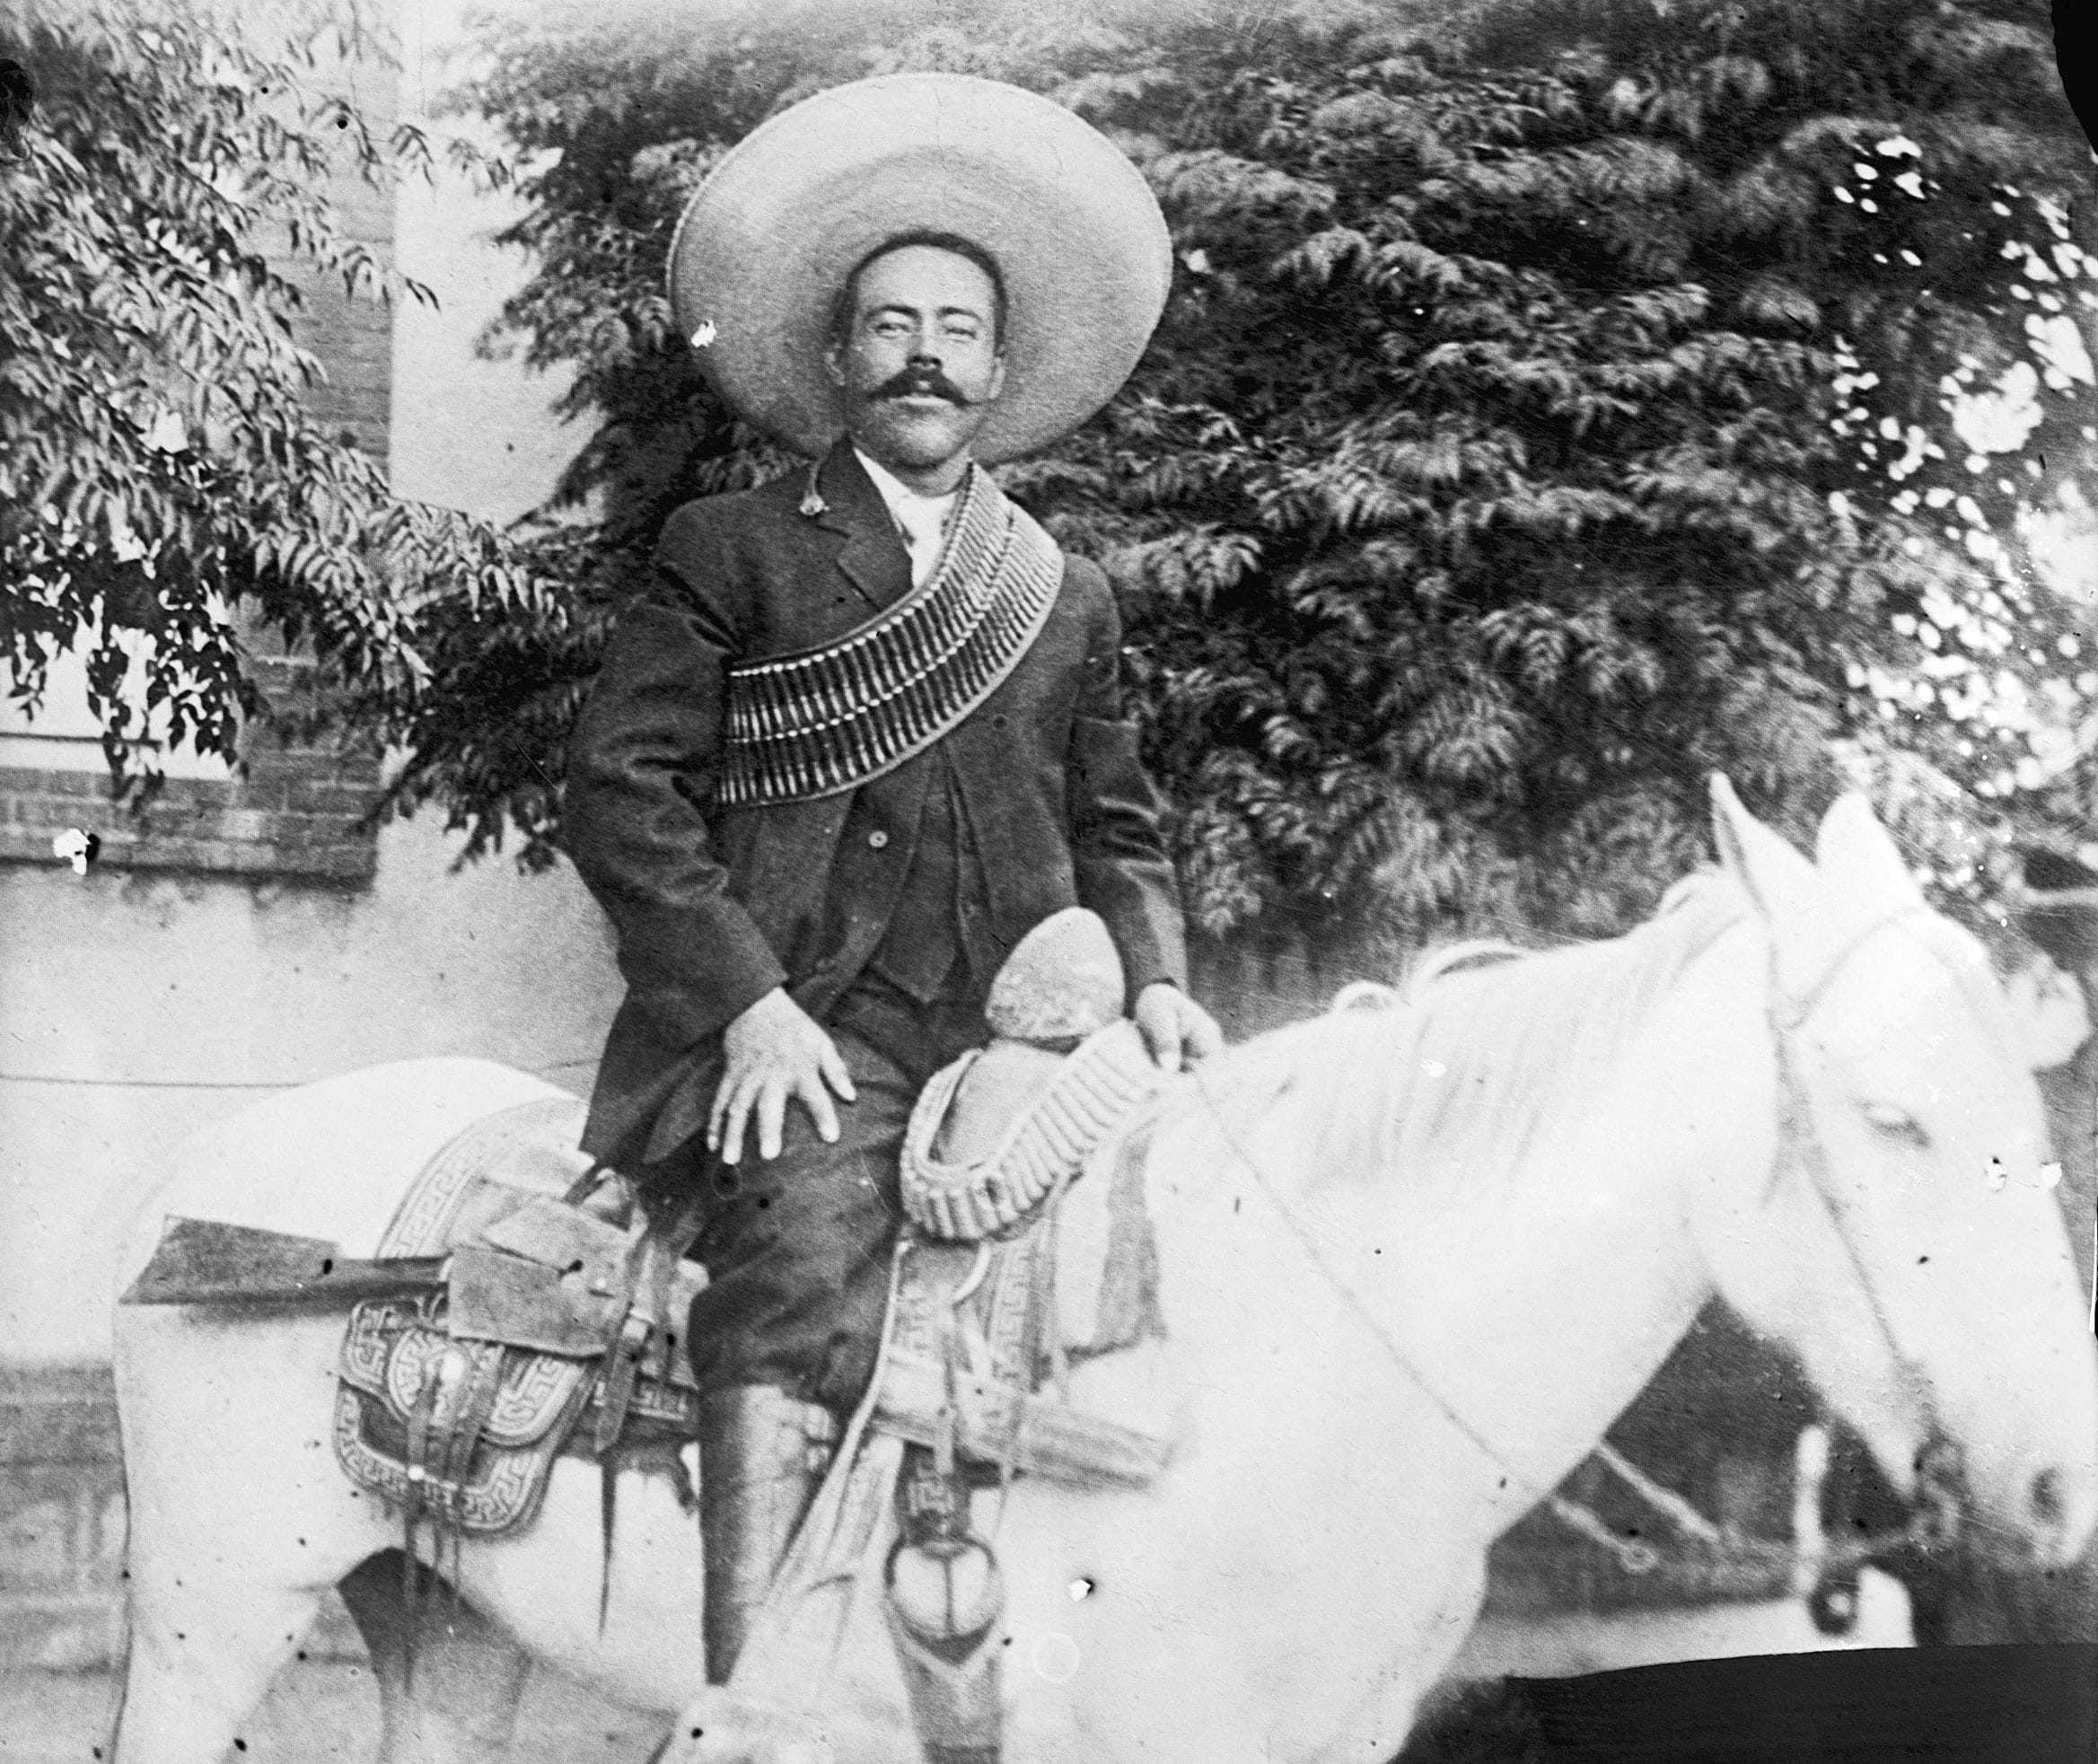 L’expédition punitive américaine contre Pancho Villa ou la Guerre des frontières sans front